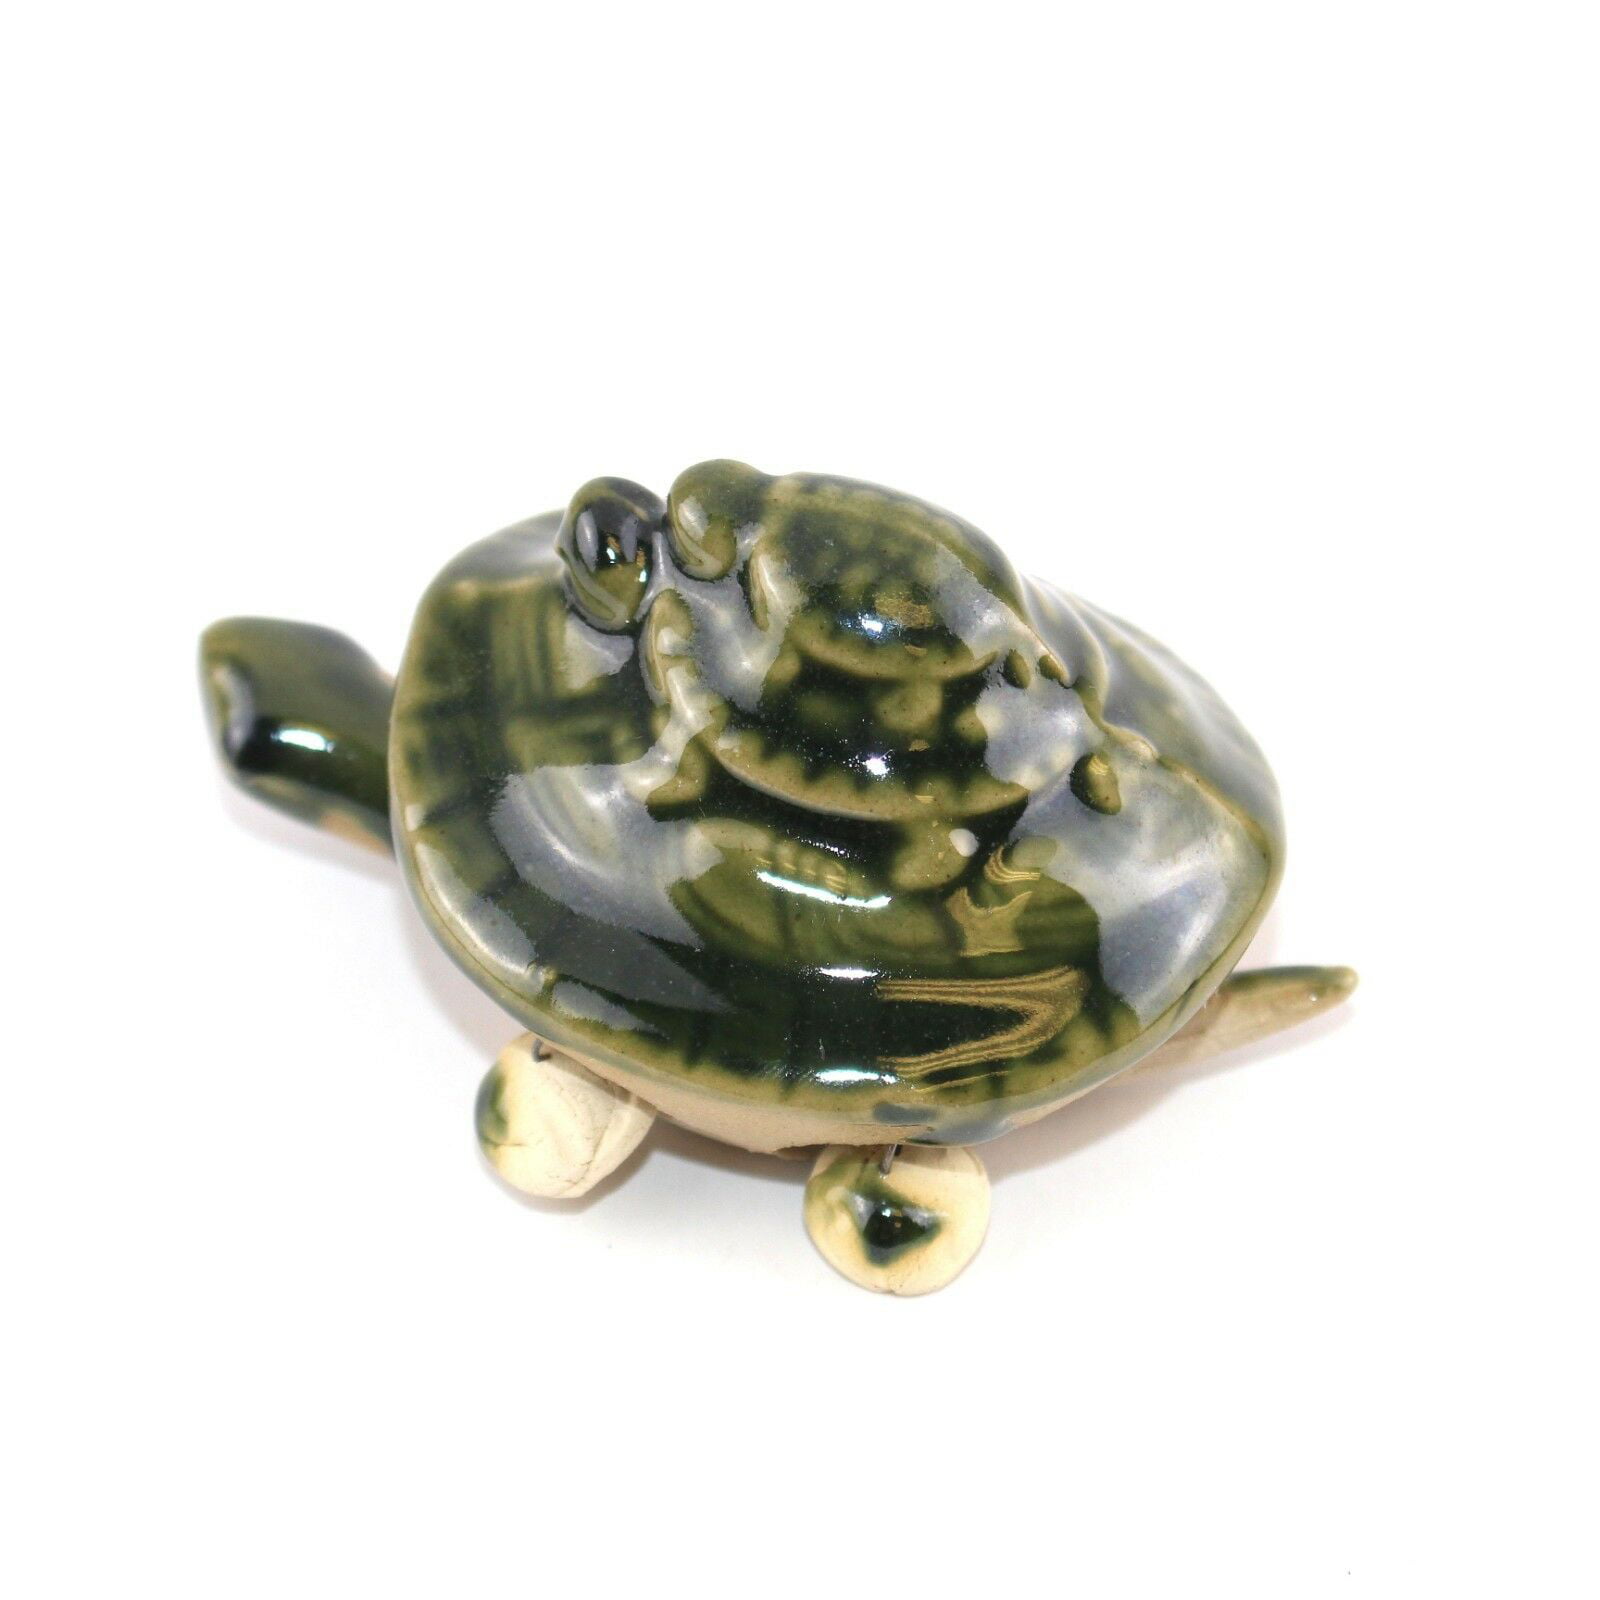 Set of 4 Ceramic 3" Green Mini Bobble Head Turtle Statues Home Office Decor 